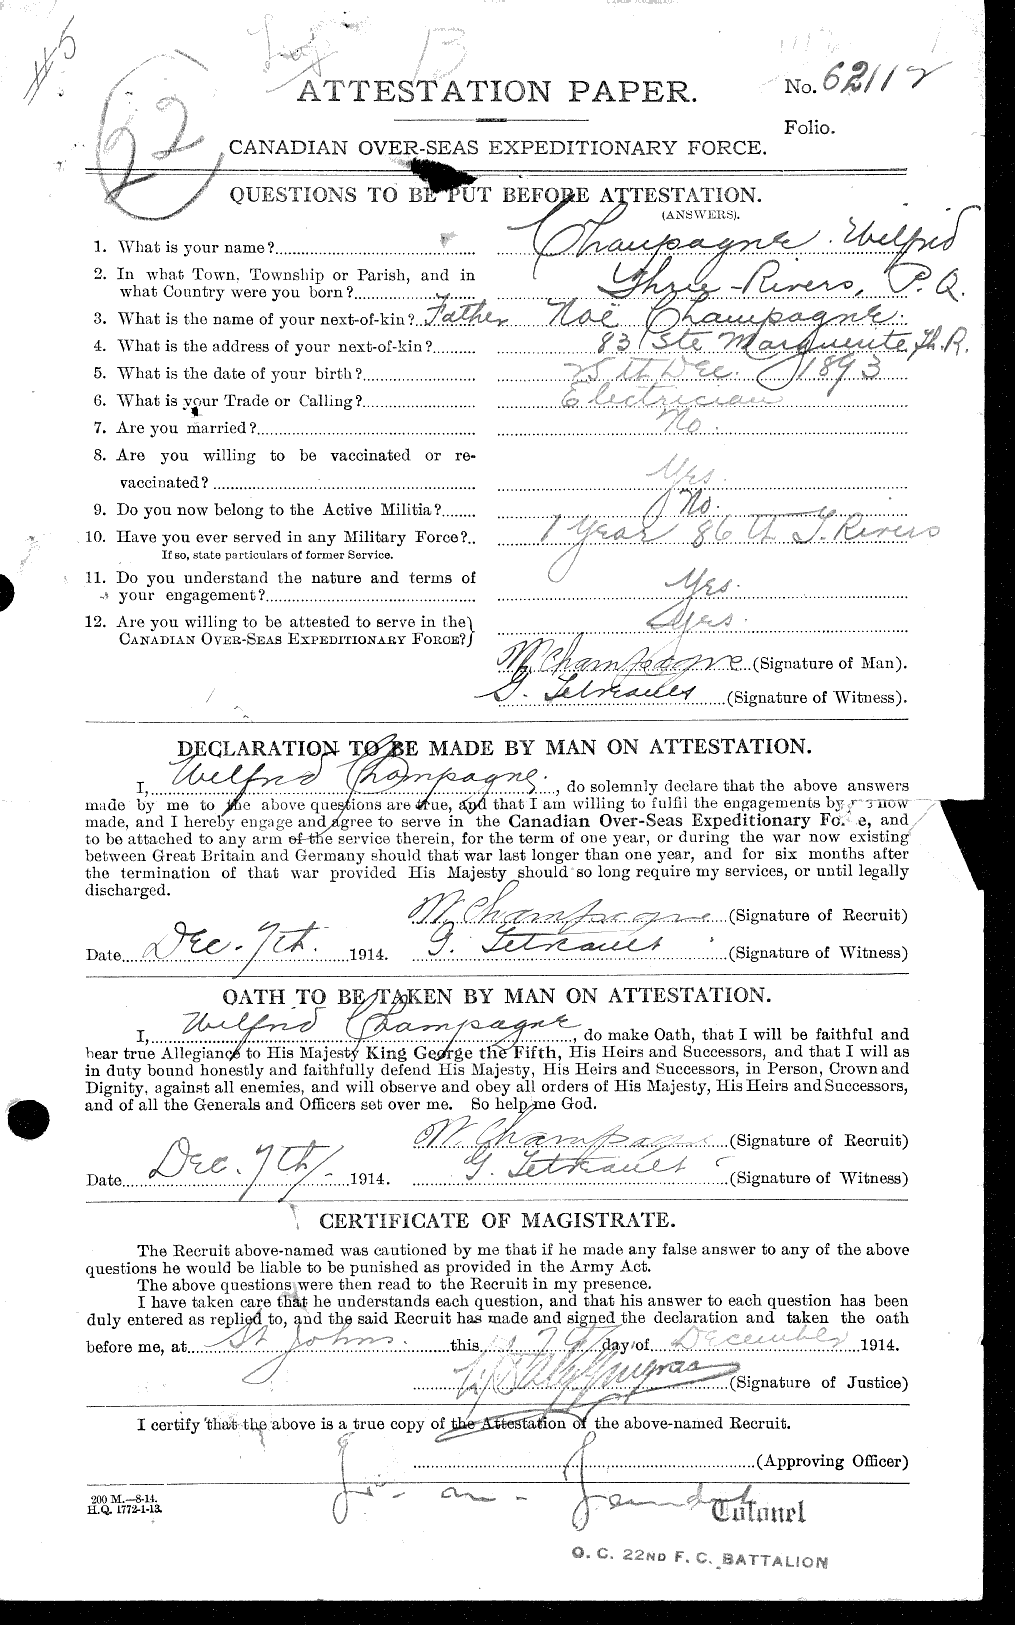 Dossiers du Personnel de la Première Guerre mondiale - CEC 019768a